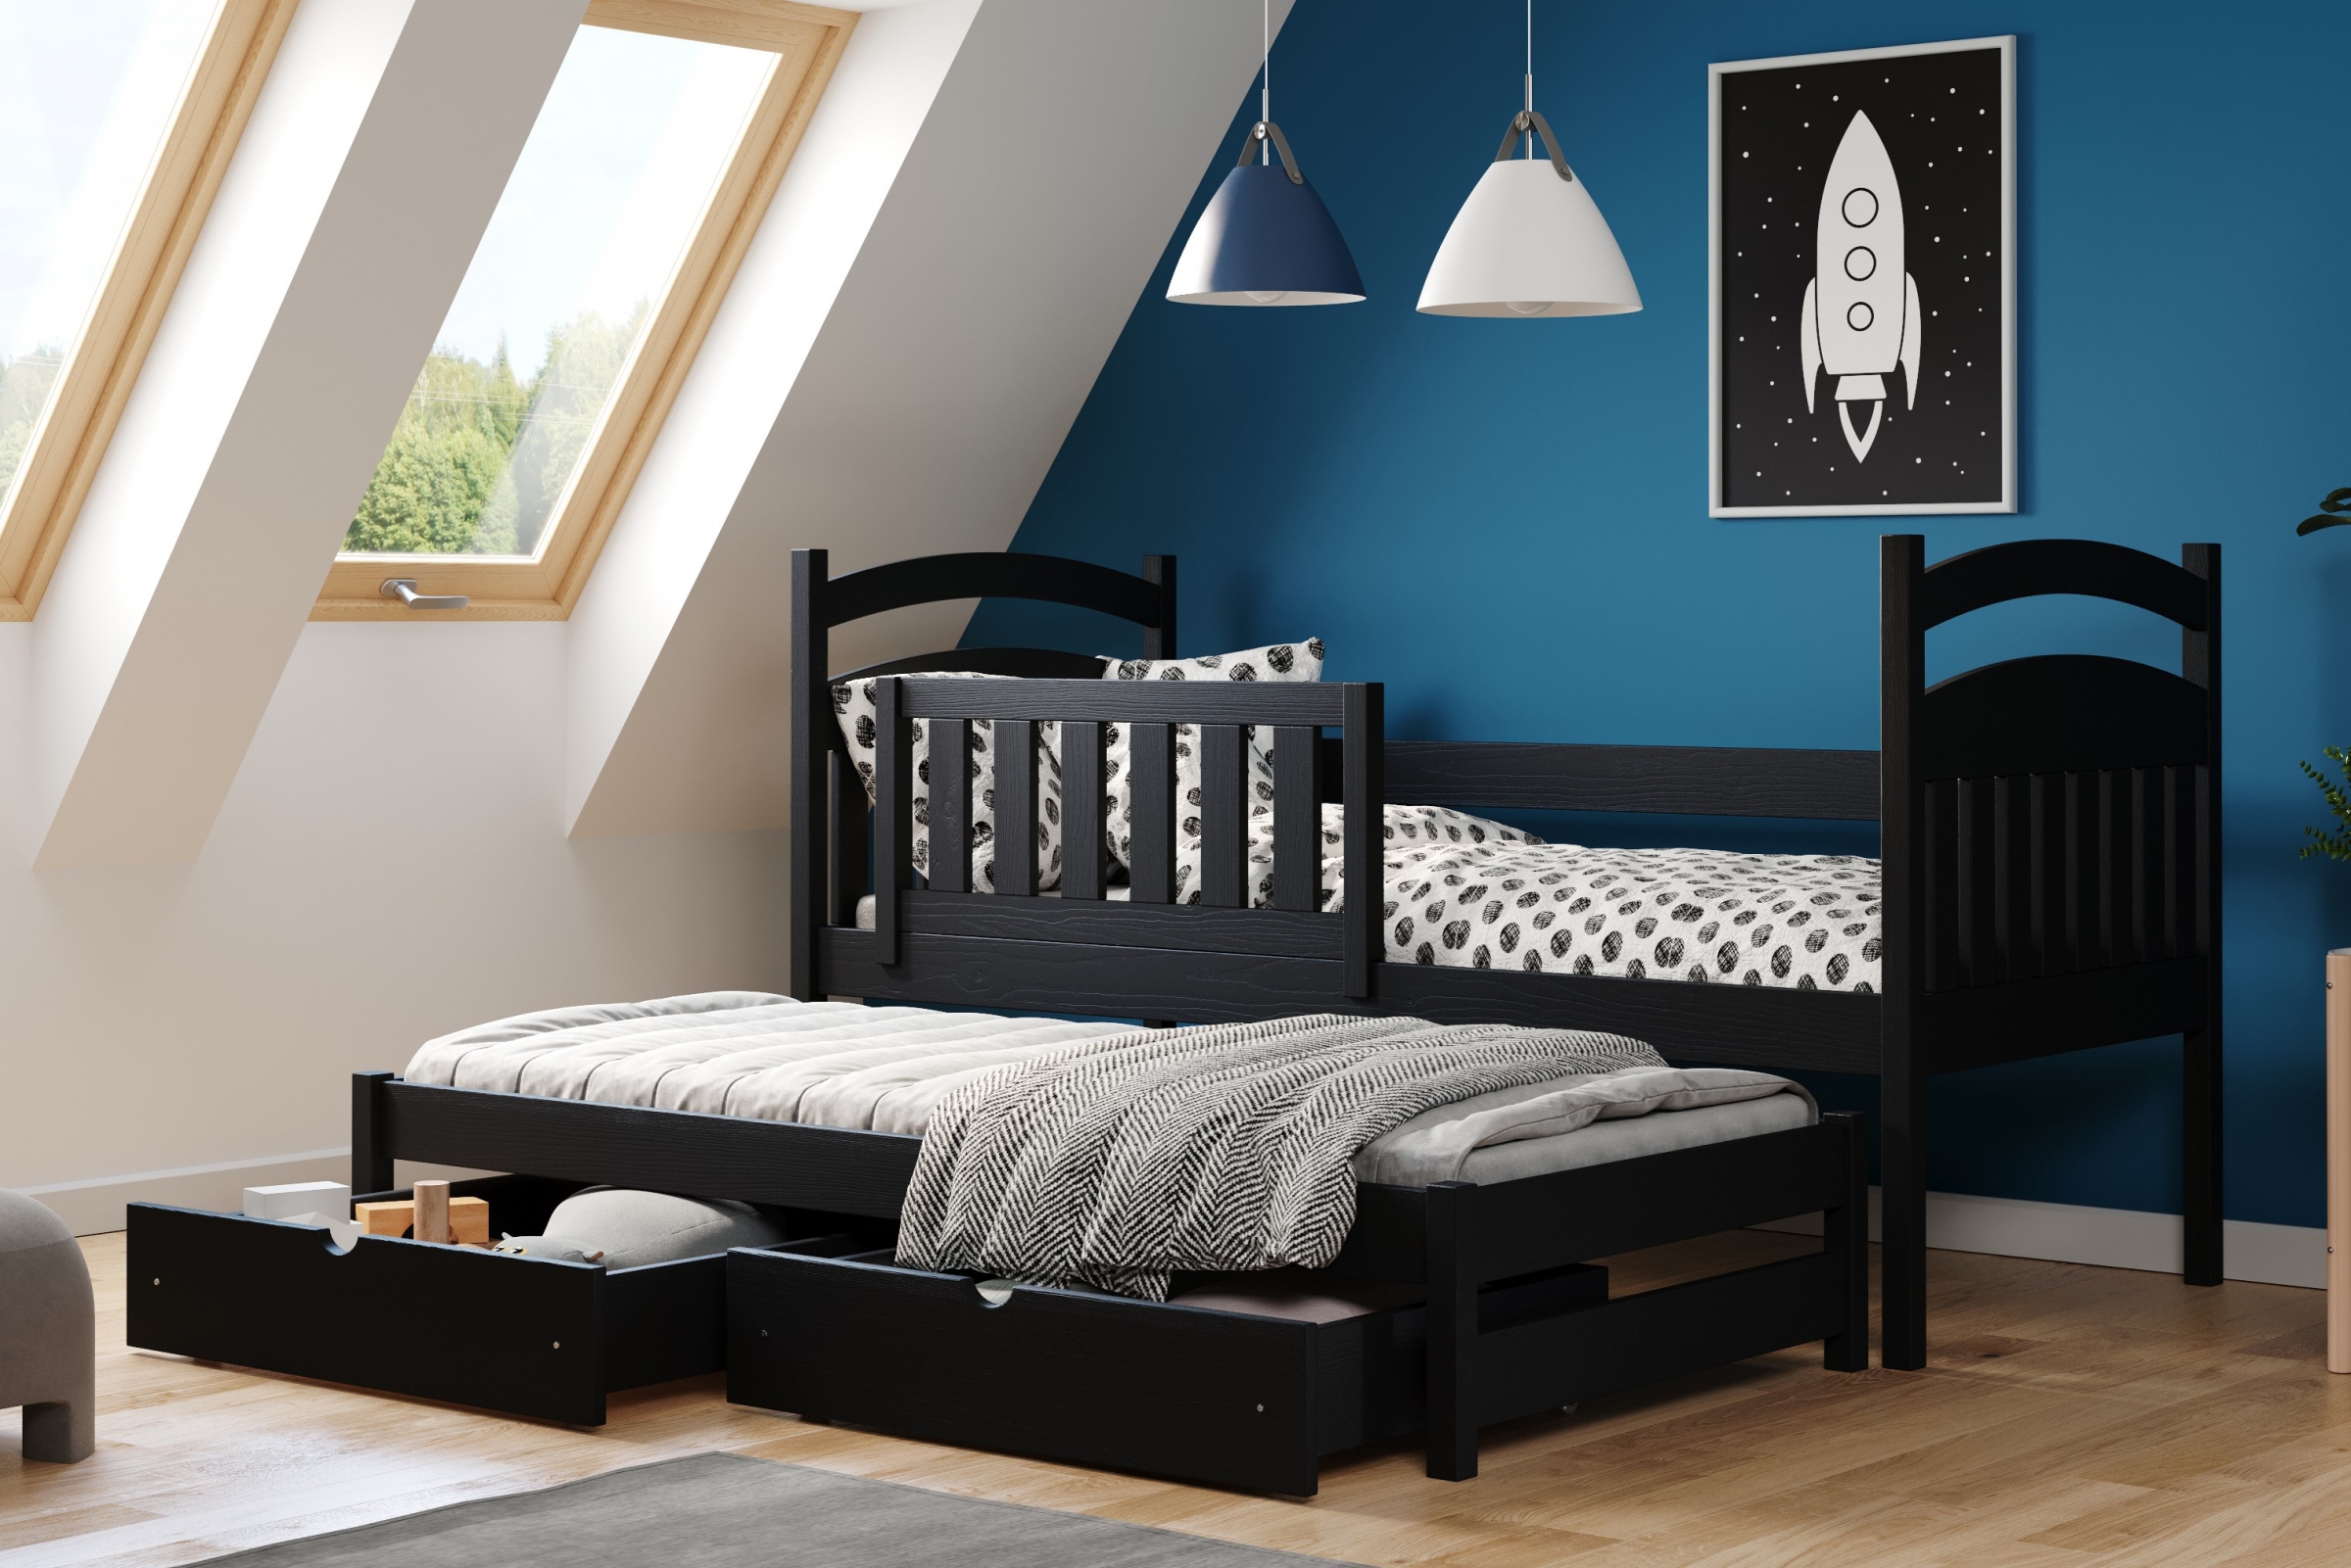 Łóżko dziecięce parterowe wysuwane Amely - czarny, 80x160 Łóżko dziecięce parterowe wyjazdowe Amely - kolor czarny - aranżacja